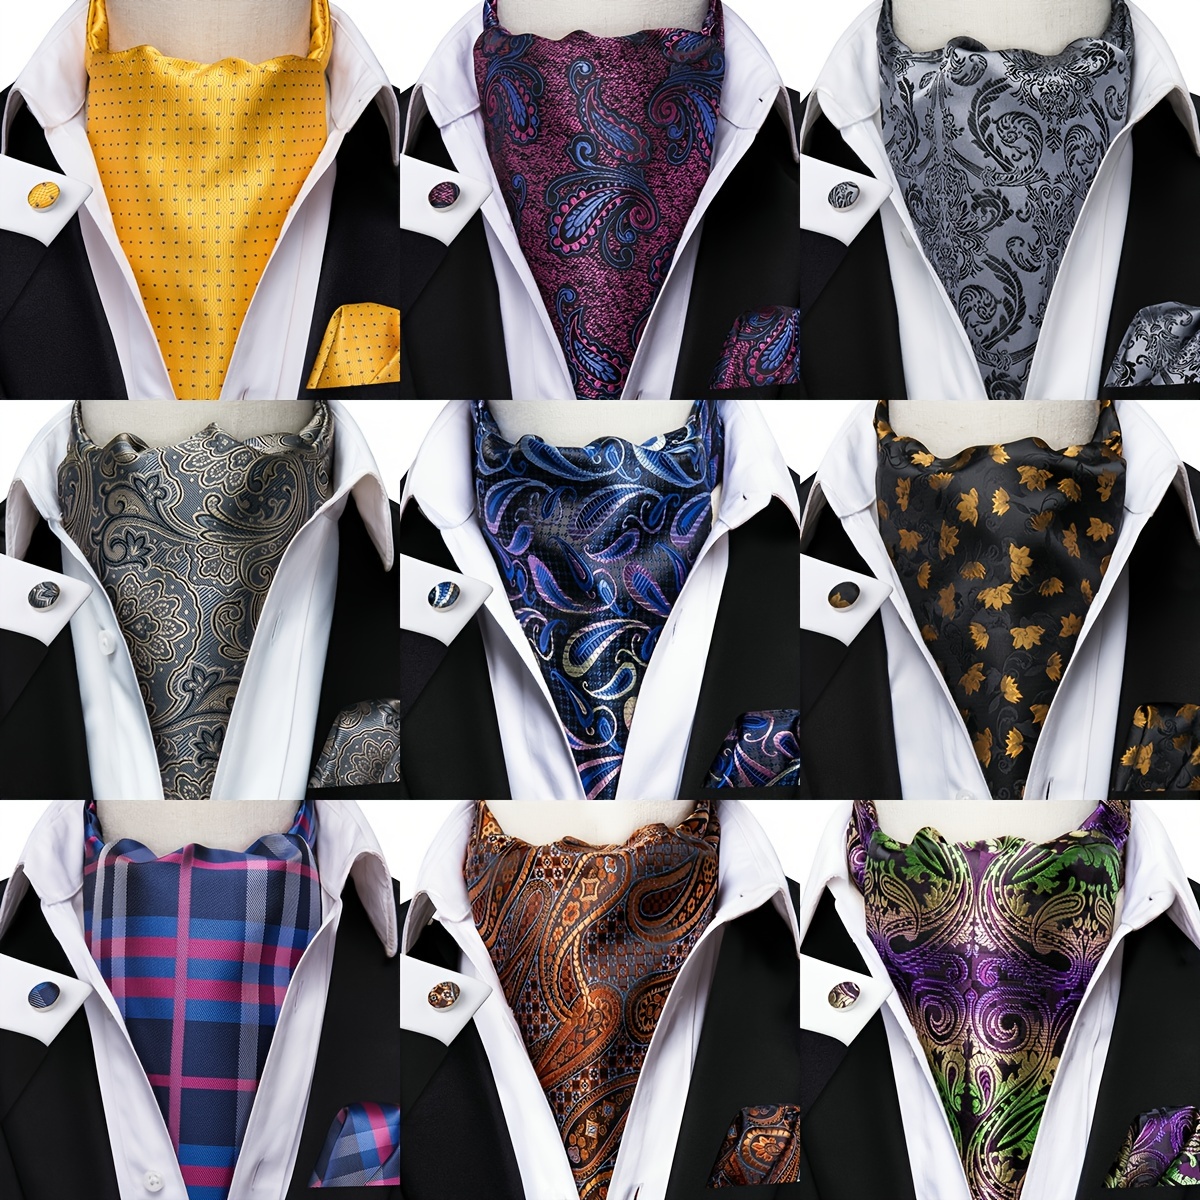  DiBanGu Blue Ascot Ties for Men Cravat Tie and Pocket